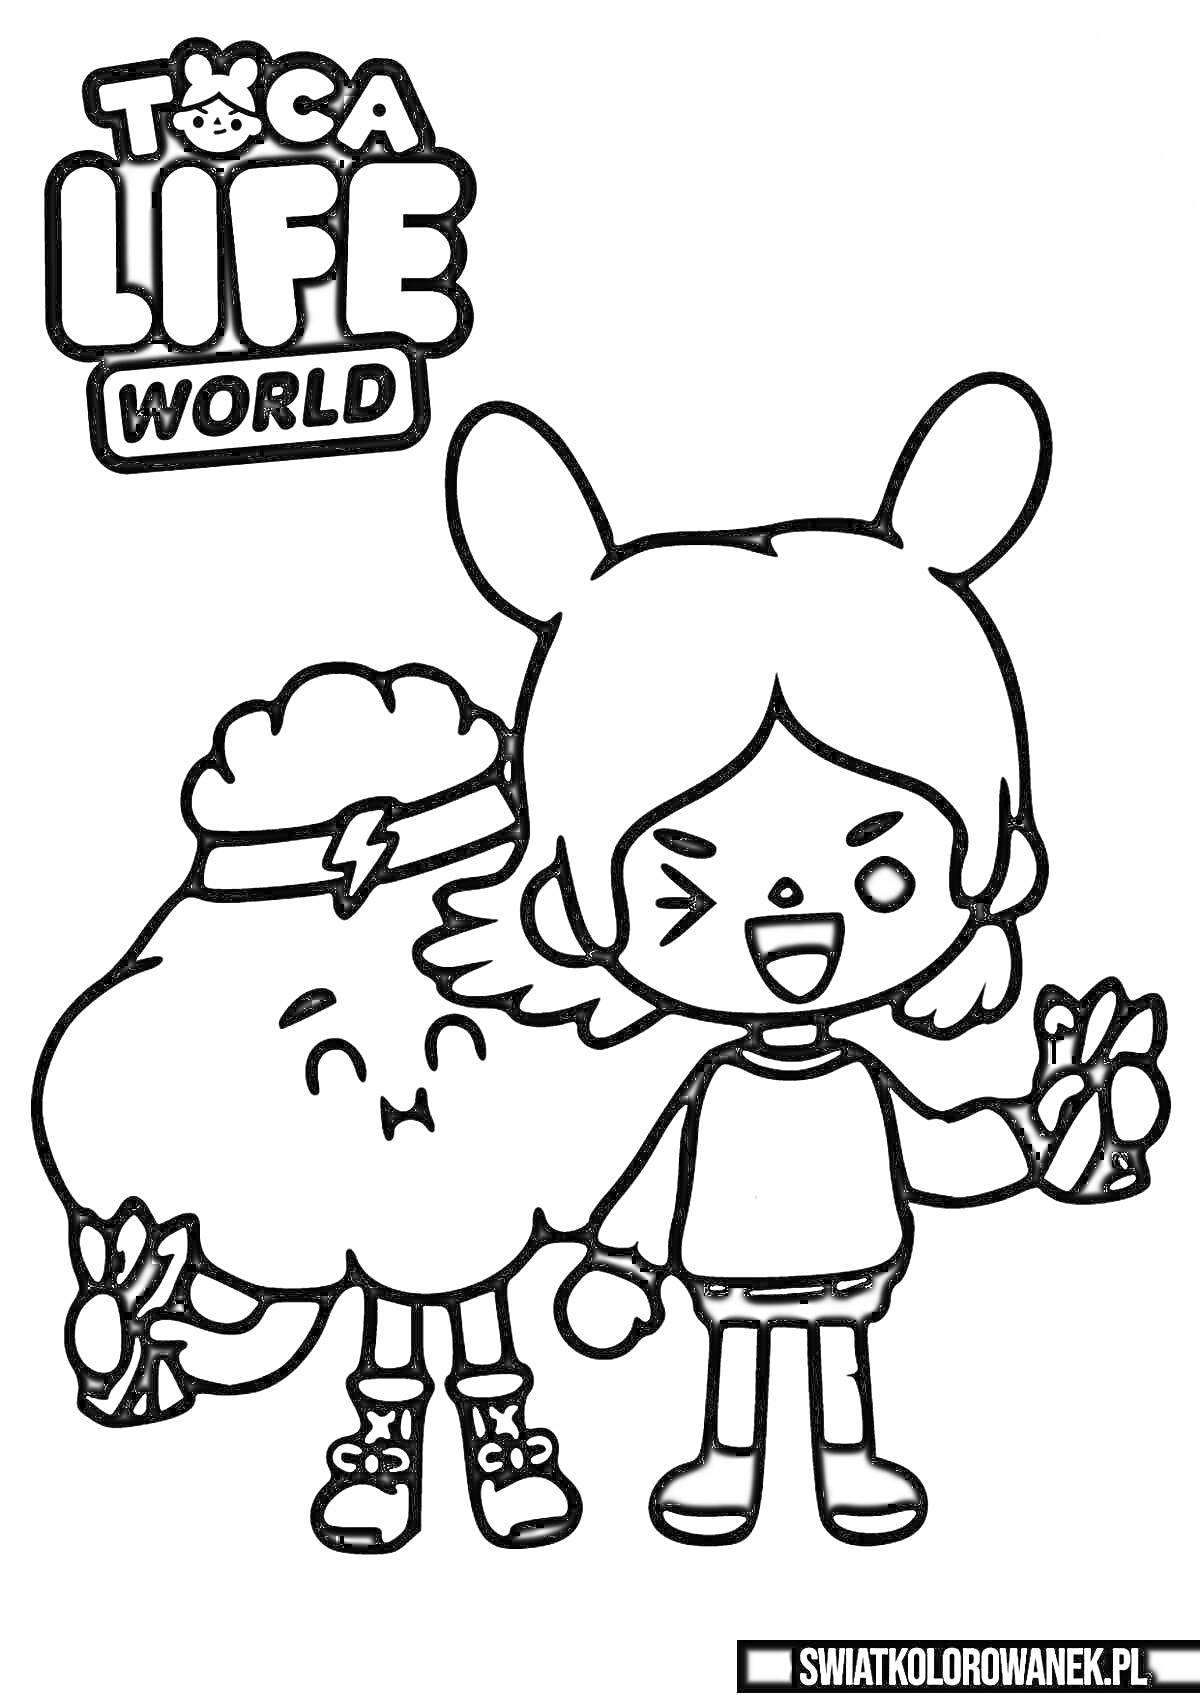 Раскраска Персонажи Toca Life World: девочка с ушами и улыбающееся облако